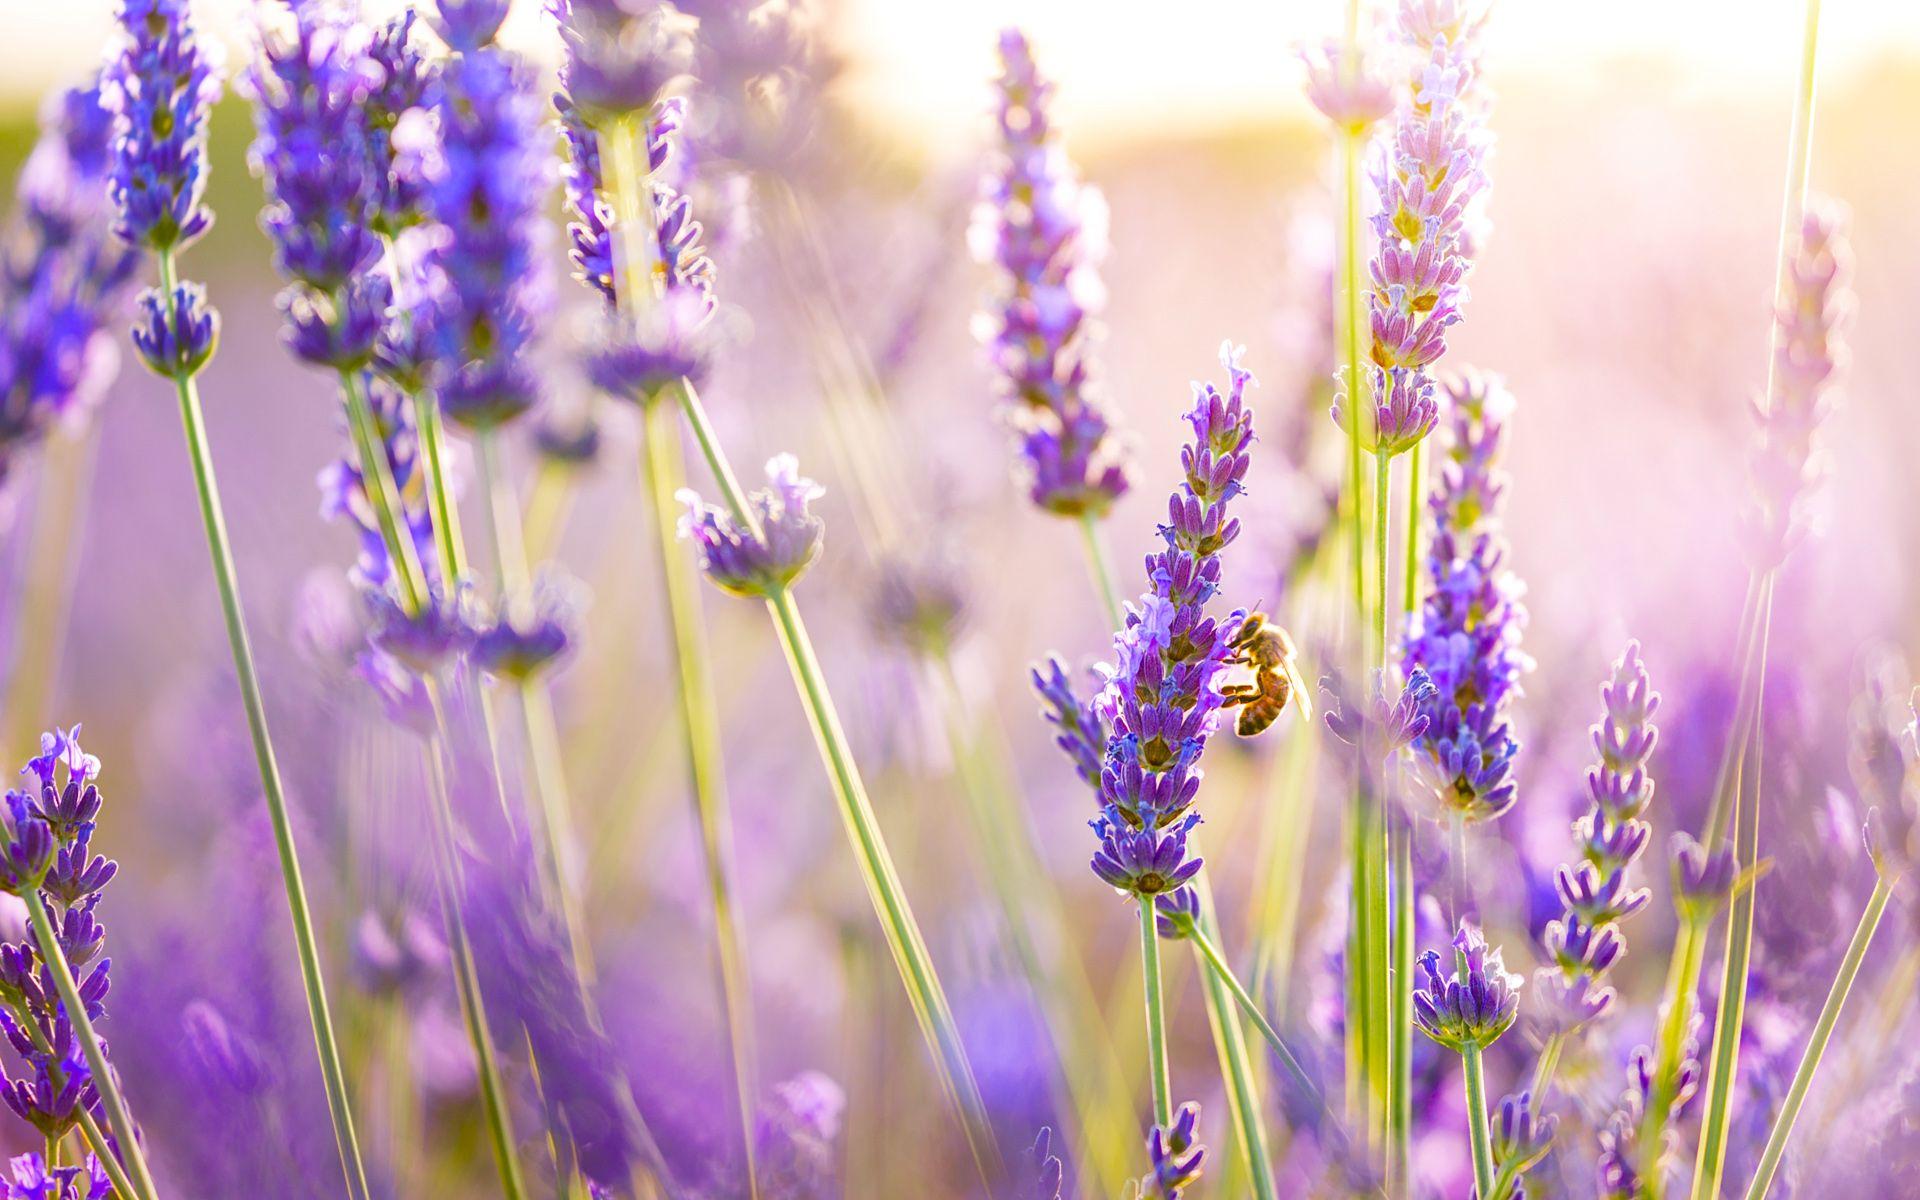 Màu tím hương làm nên vẻ đẹp ẩn hiện trong cánh đồng lavender. Tất cả những gì khiến cho chúng ta cảm thấy yên bình, tươi mới và sống động đều hiện diện trong bức ảnh thiên nhiên này. Hãy thưởng thức vẻ đẹp tuyệt vời này thông qua hình ảnh cánh đồng lavender rực rỡ. (Translation: The purple color makes up the beauty hidden in the lavender field. All that makes us feel peaceful, fresh, and vibrant are present in this natural image. Enjoy this amazing beauty through the bright lavender field image.)